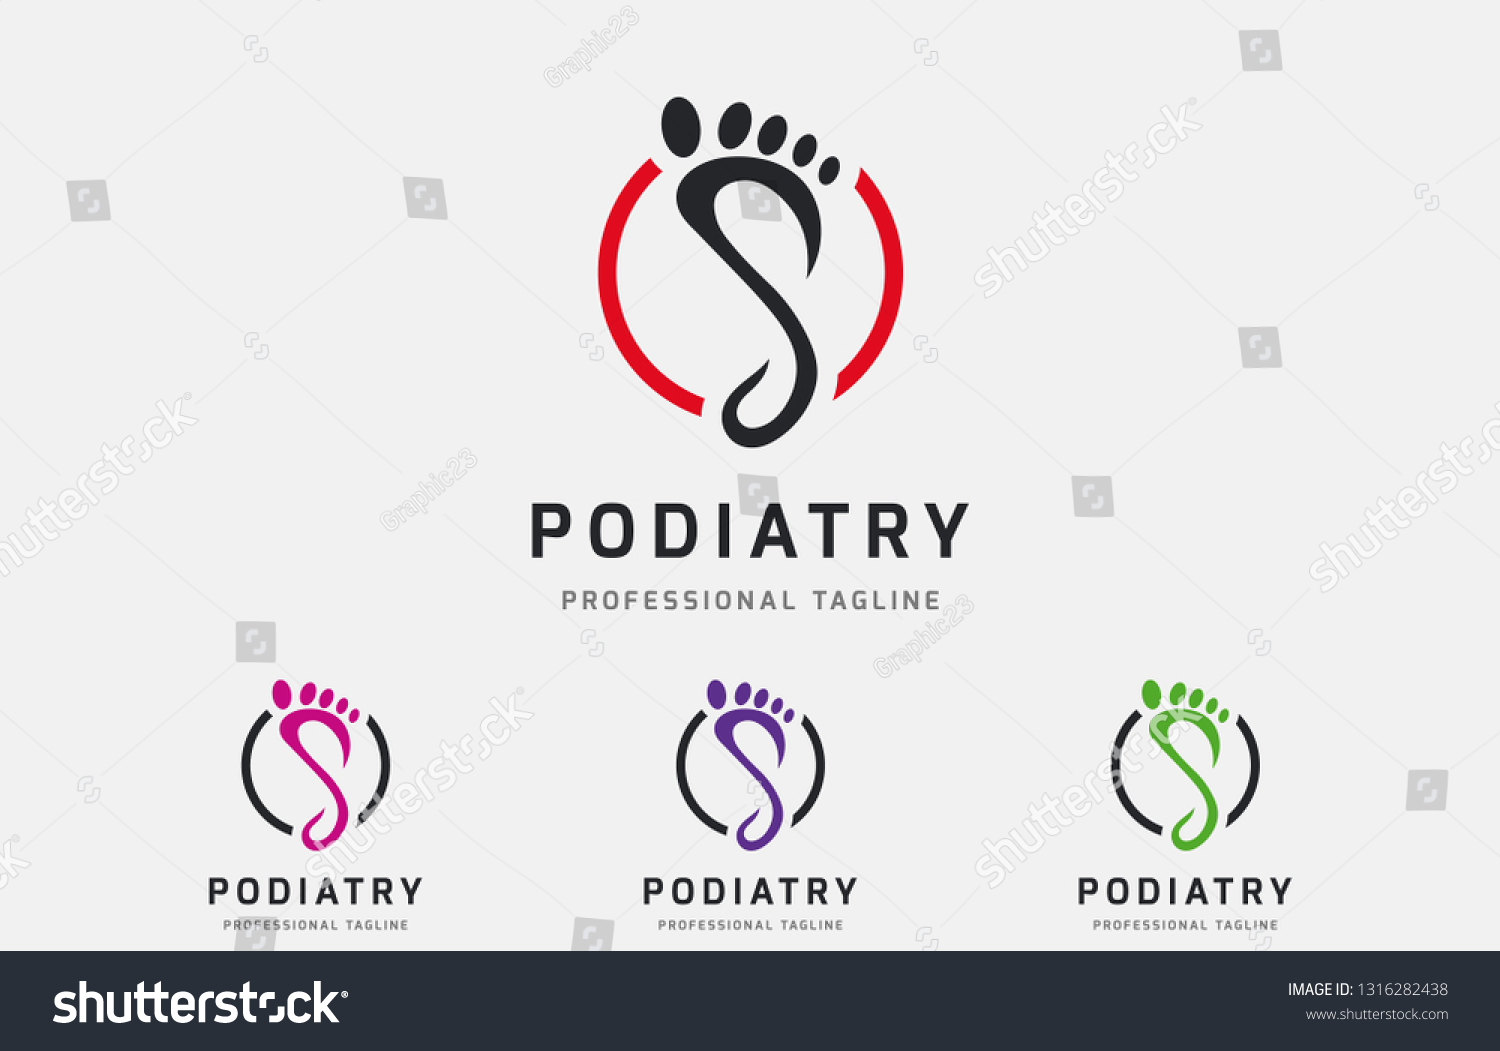 Podiatry Circle Logo Design Vector File Stock Vector (Royalty Free ...